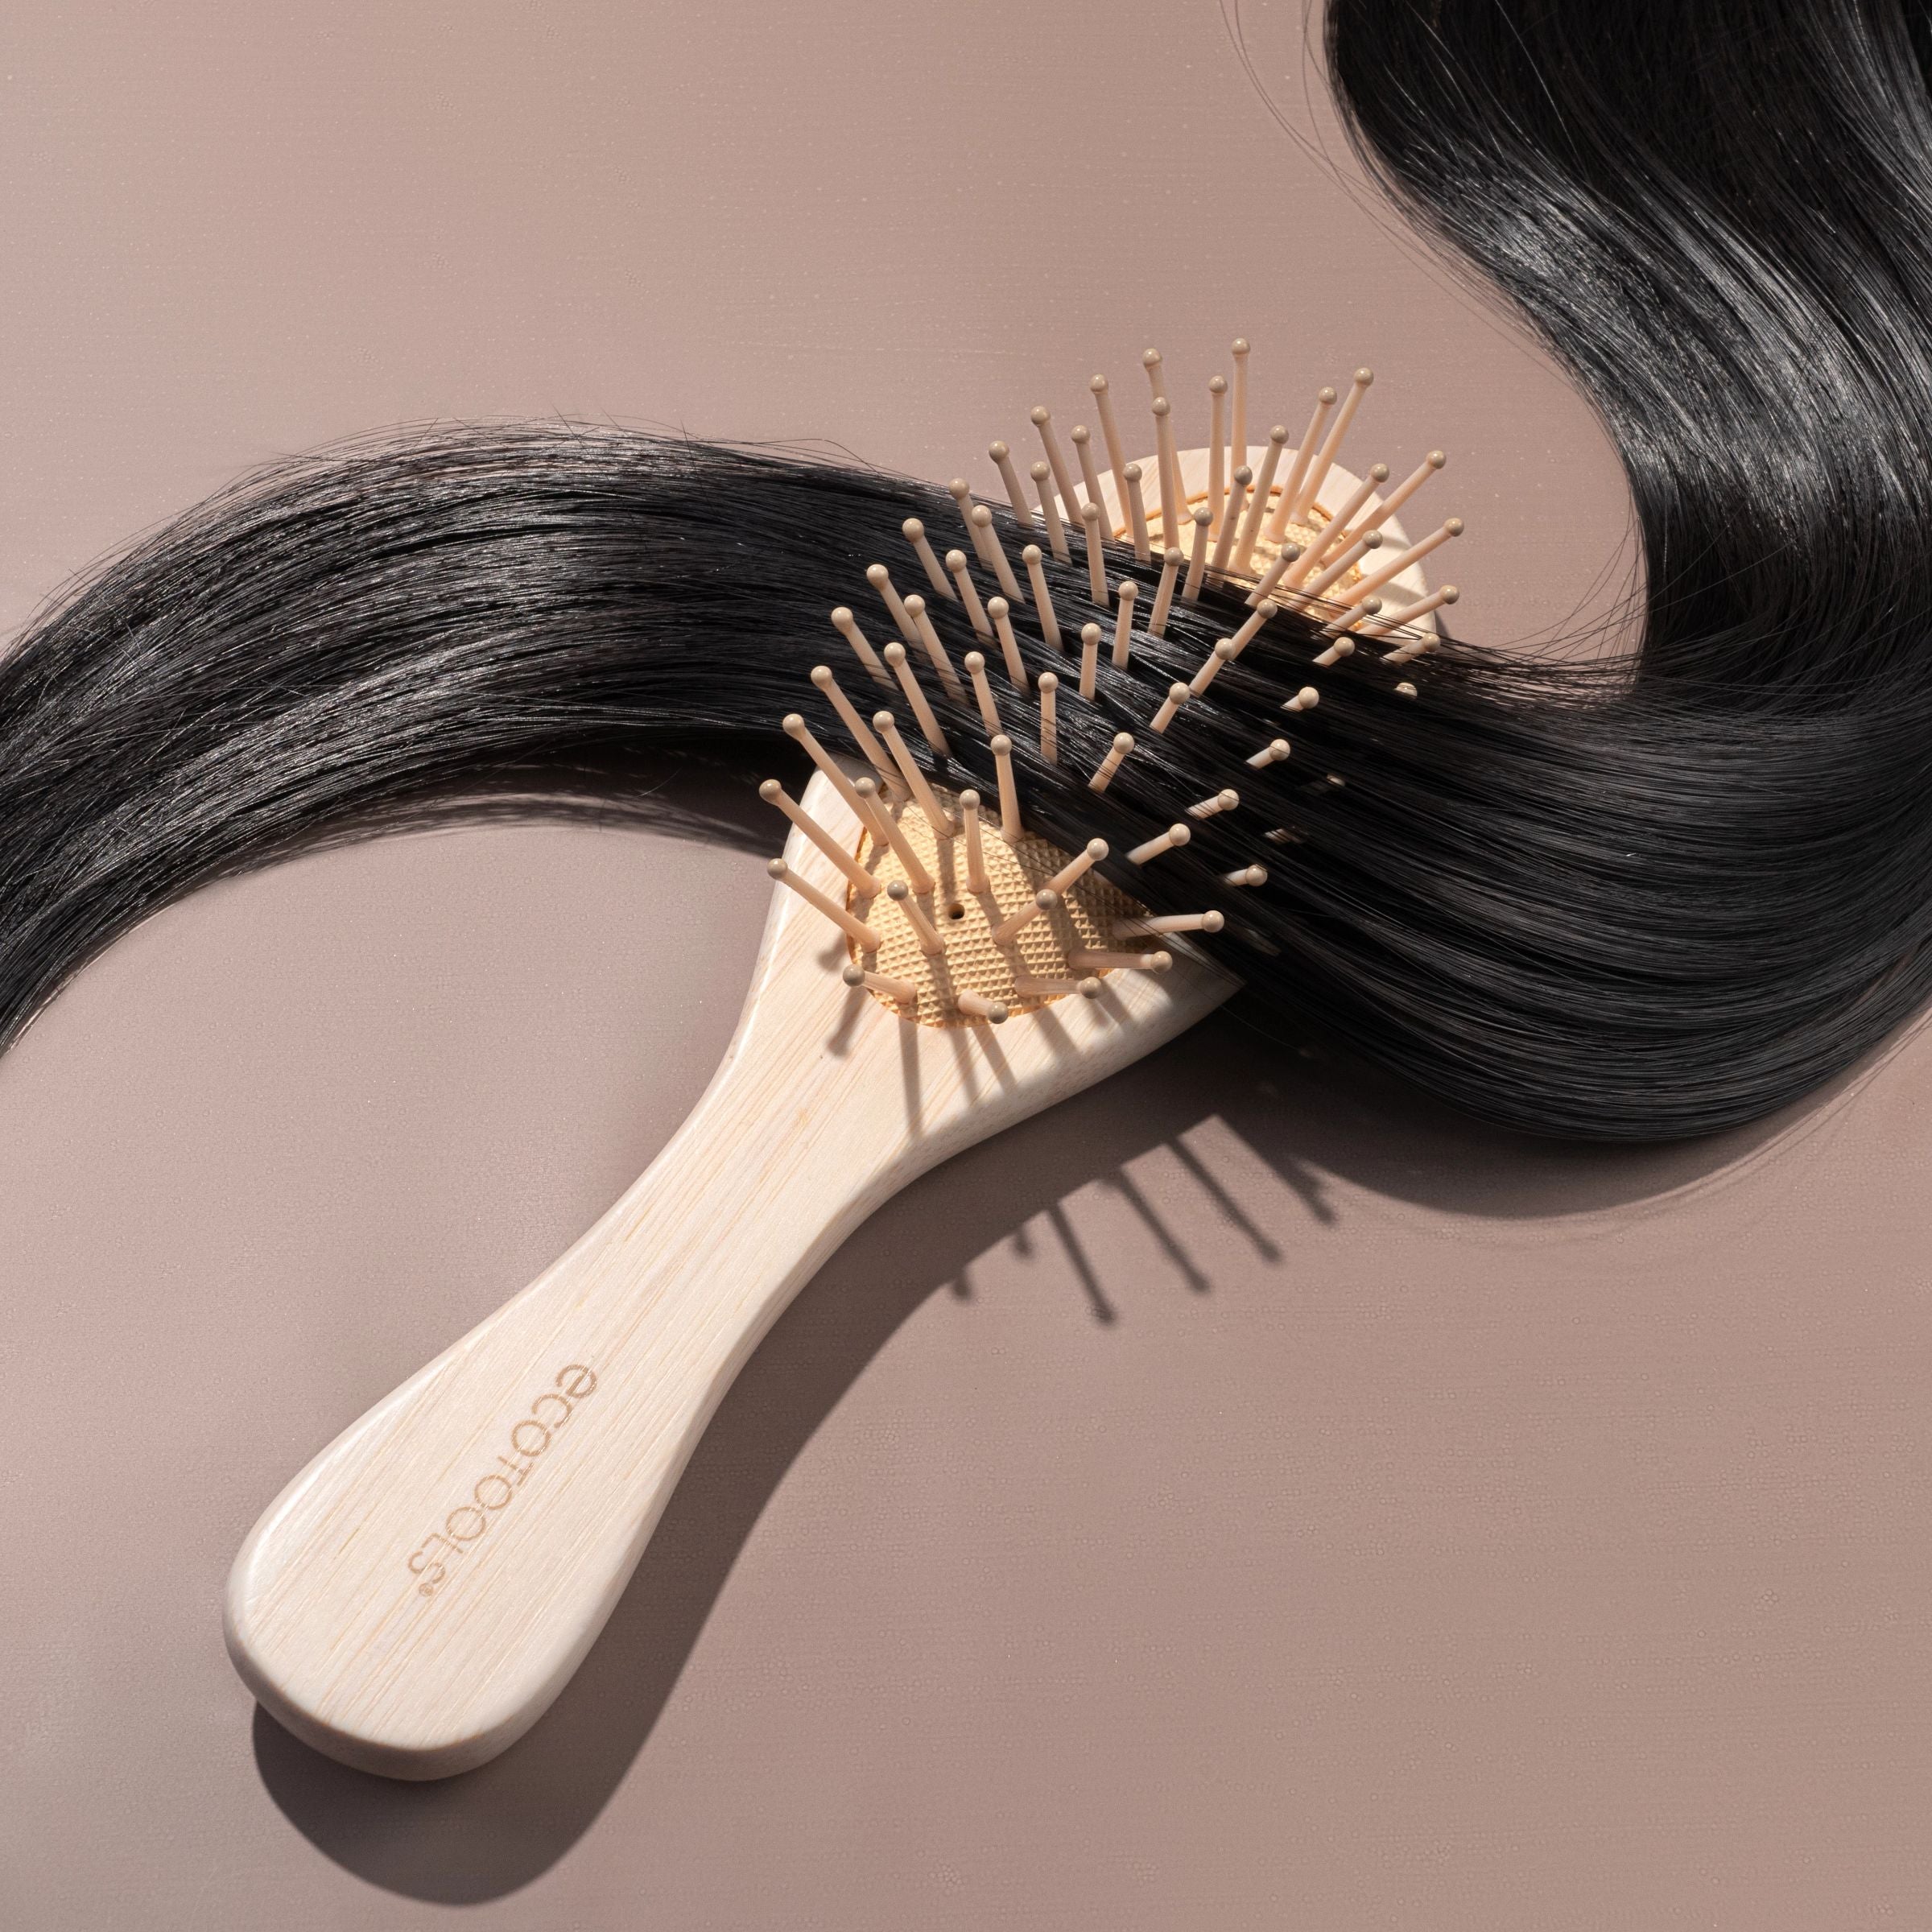 EcoTools Mini Detangler Hairbrush, Brush For Wet Or Dry Hair, Heat